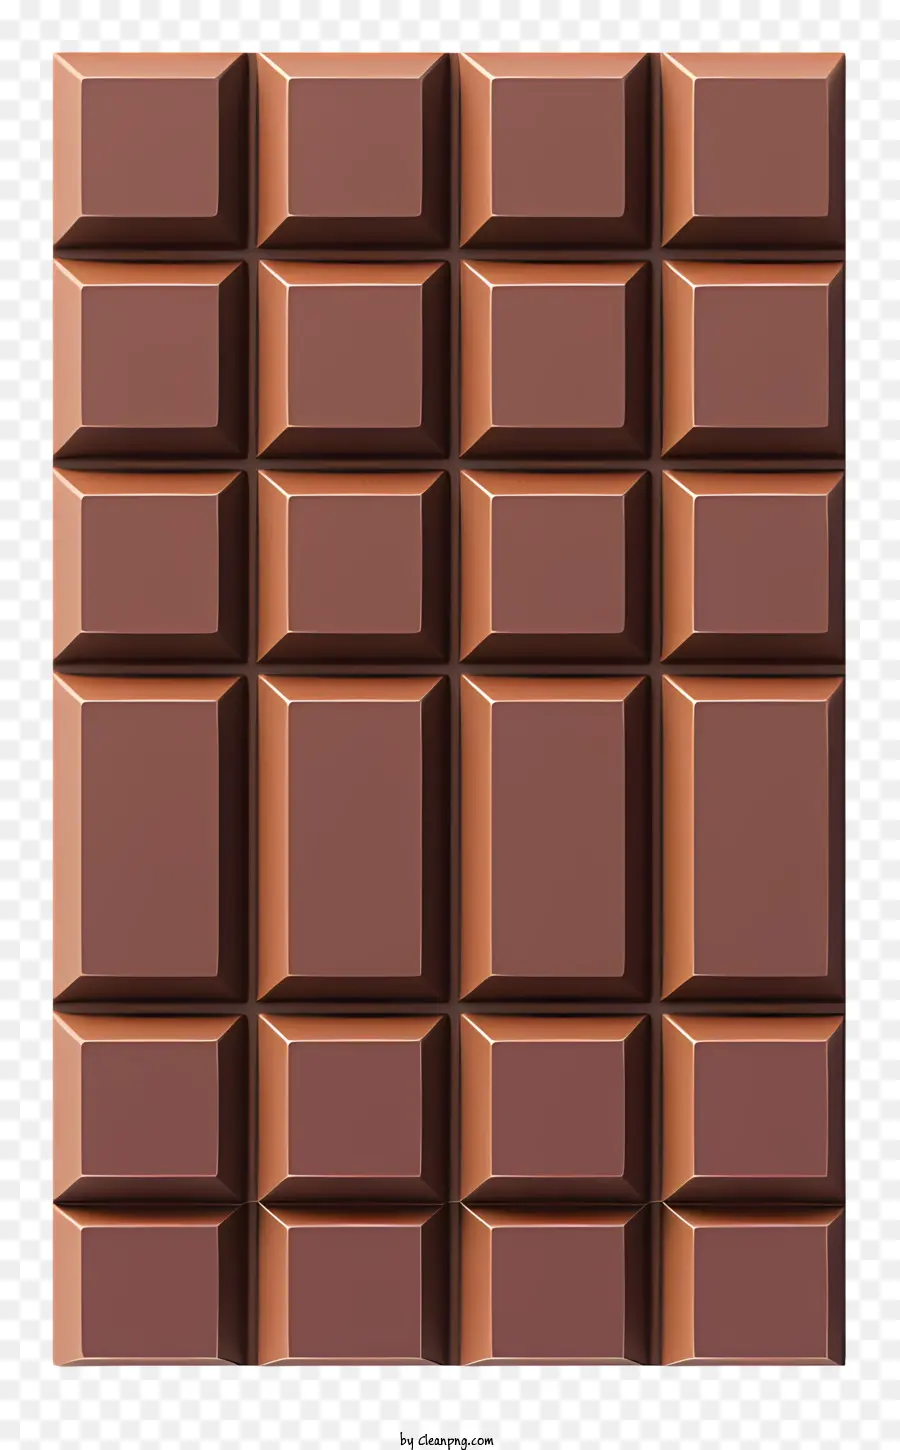 3d Schokoladen -Bar -Schokoladenstangenmuster brauner quadratischer Schokoladen -Schokoladenquadrate Schokoladenstange Textur - 3D -Modell der Schokoladenbar mit erhöhten Quadraten